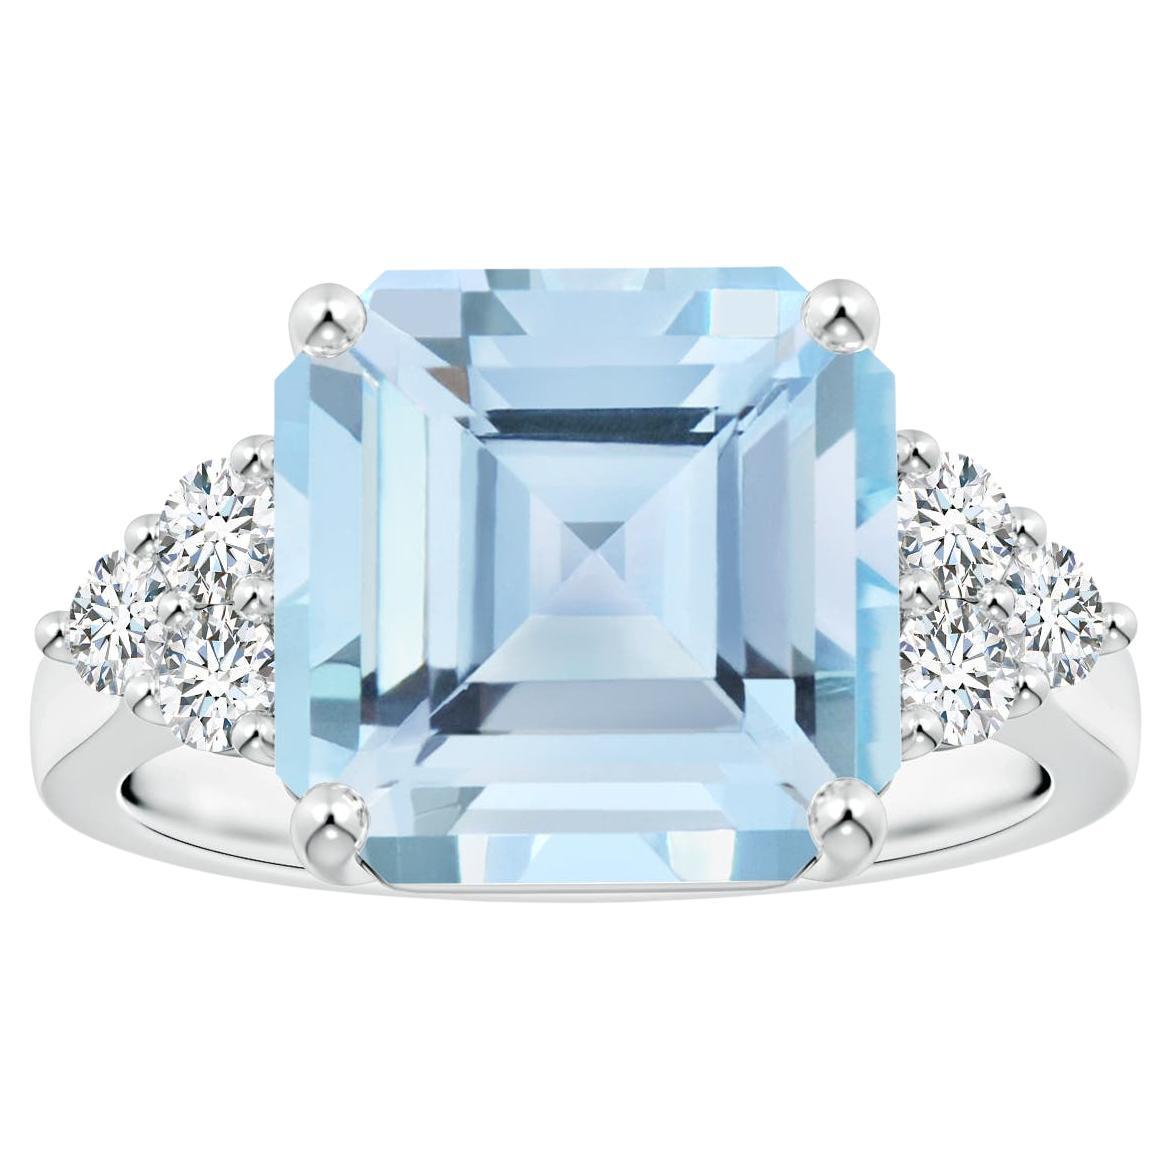 For Sale:  Angara Gia Certified Square Emerald-Cut Aquamarine Diamond Ring in Platinum